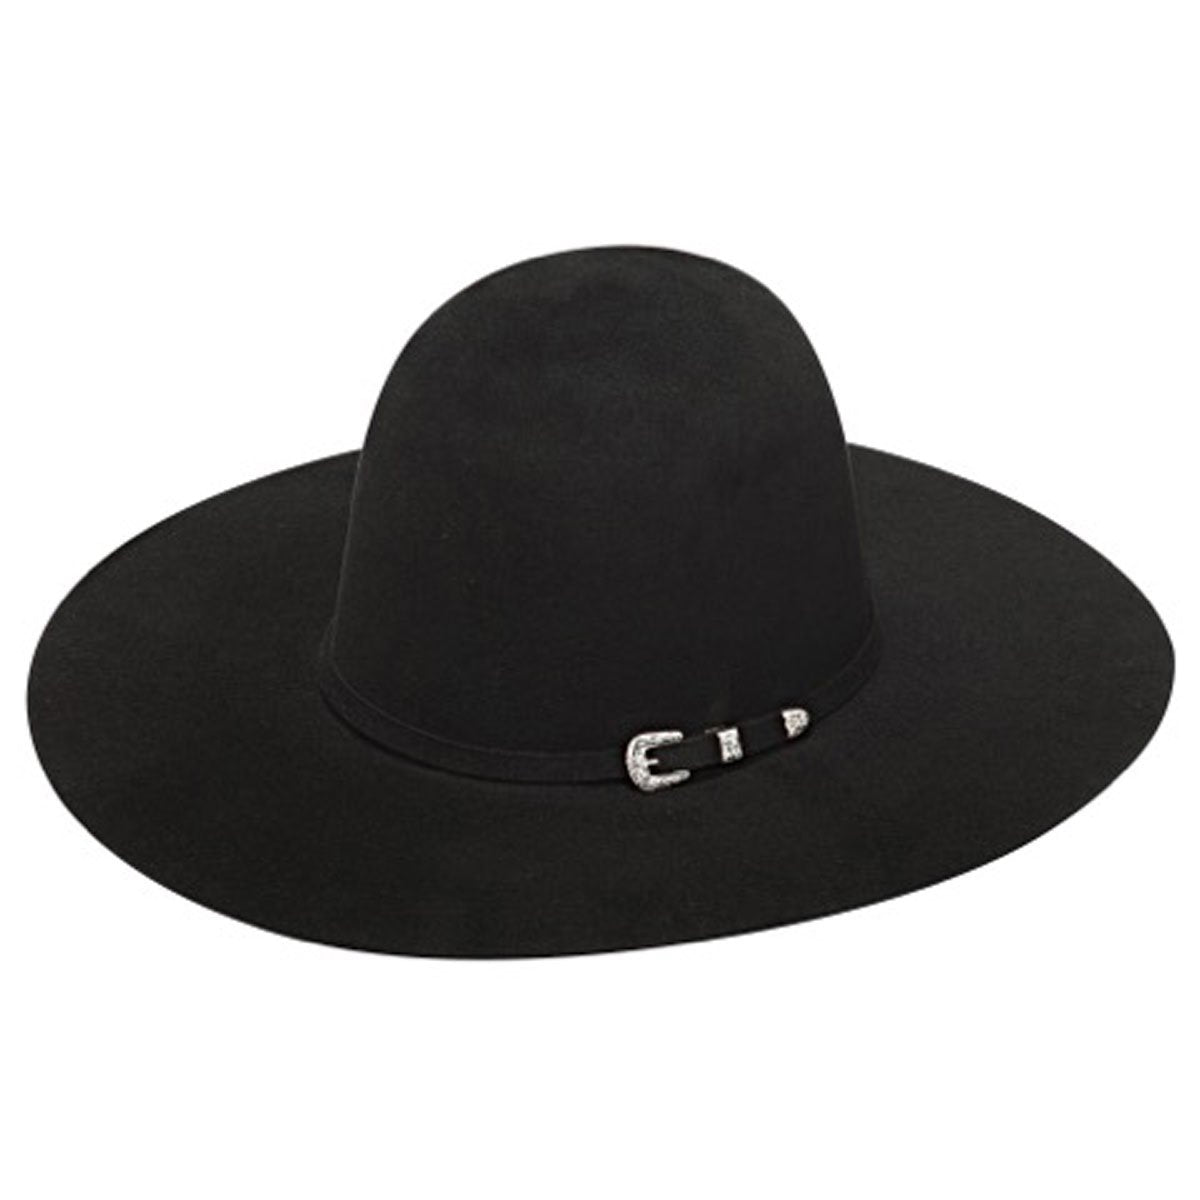 T7510201 Twister 10X Fur Open Crown Black Western Hat